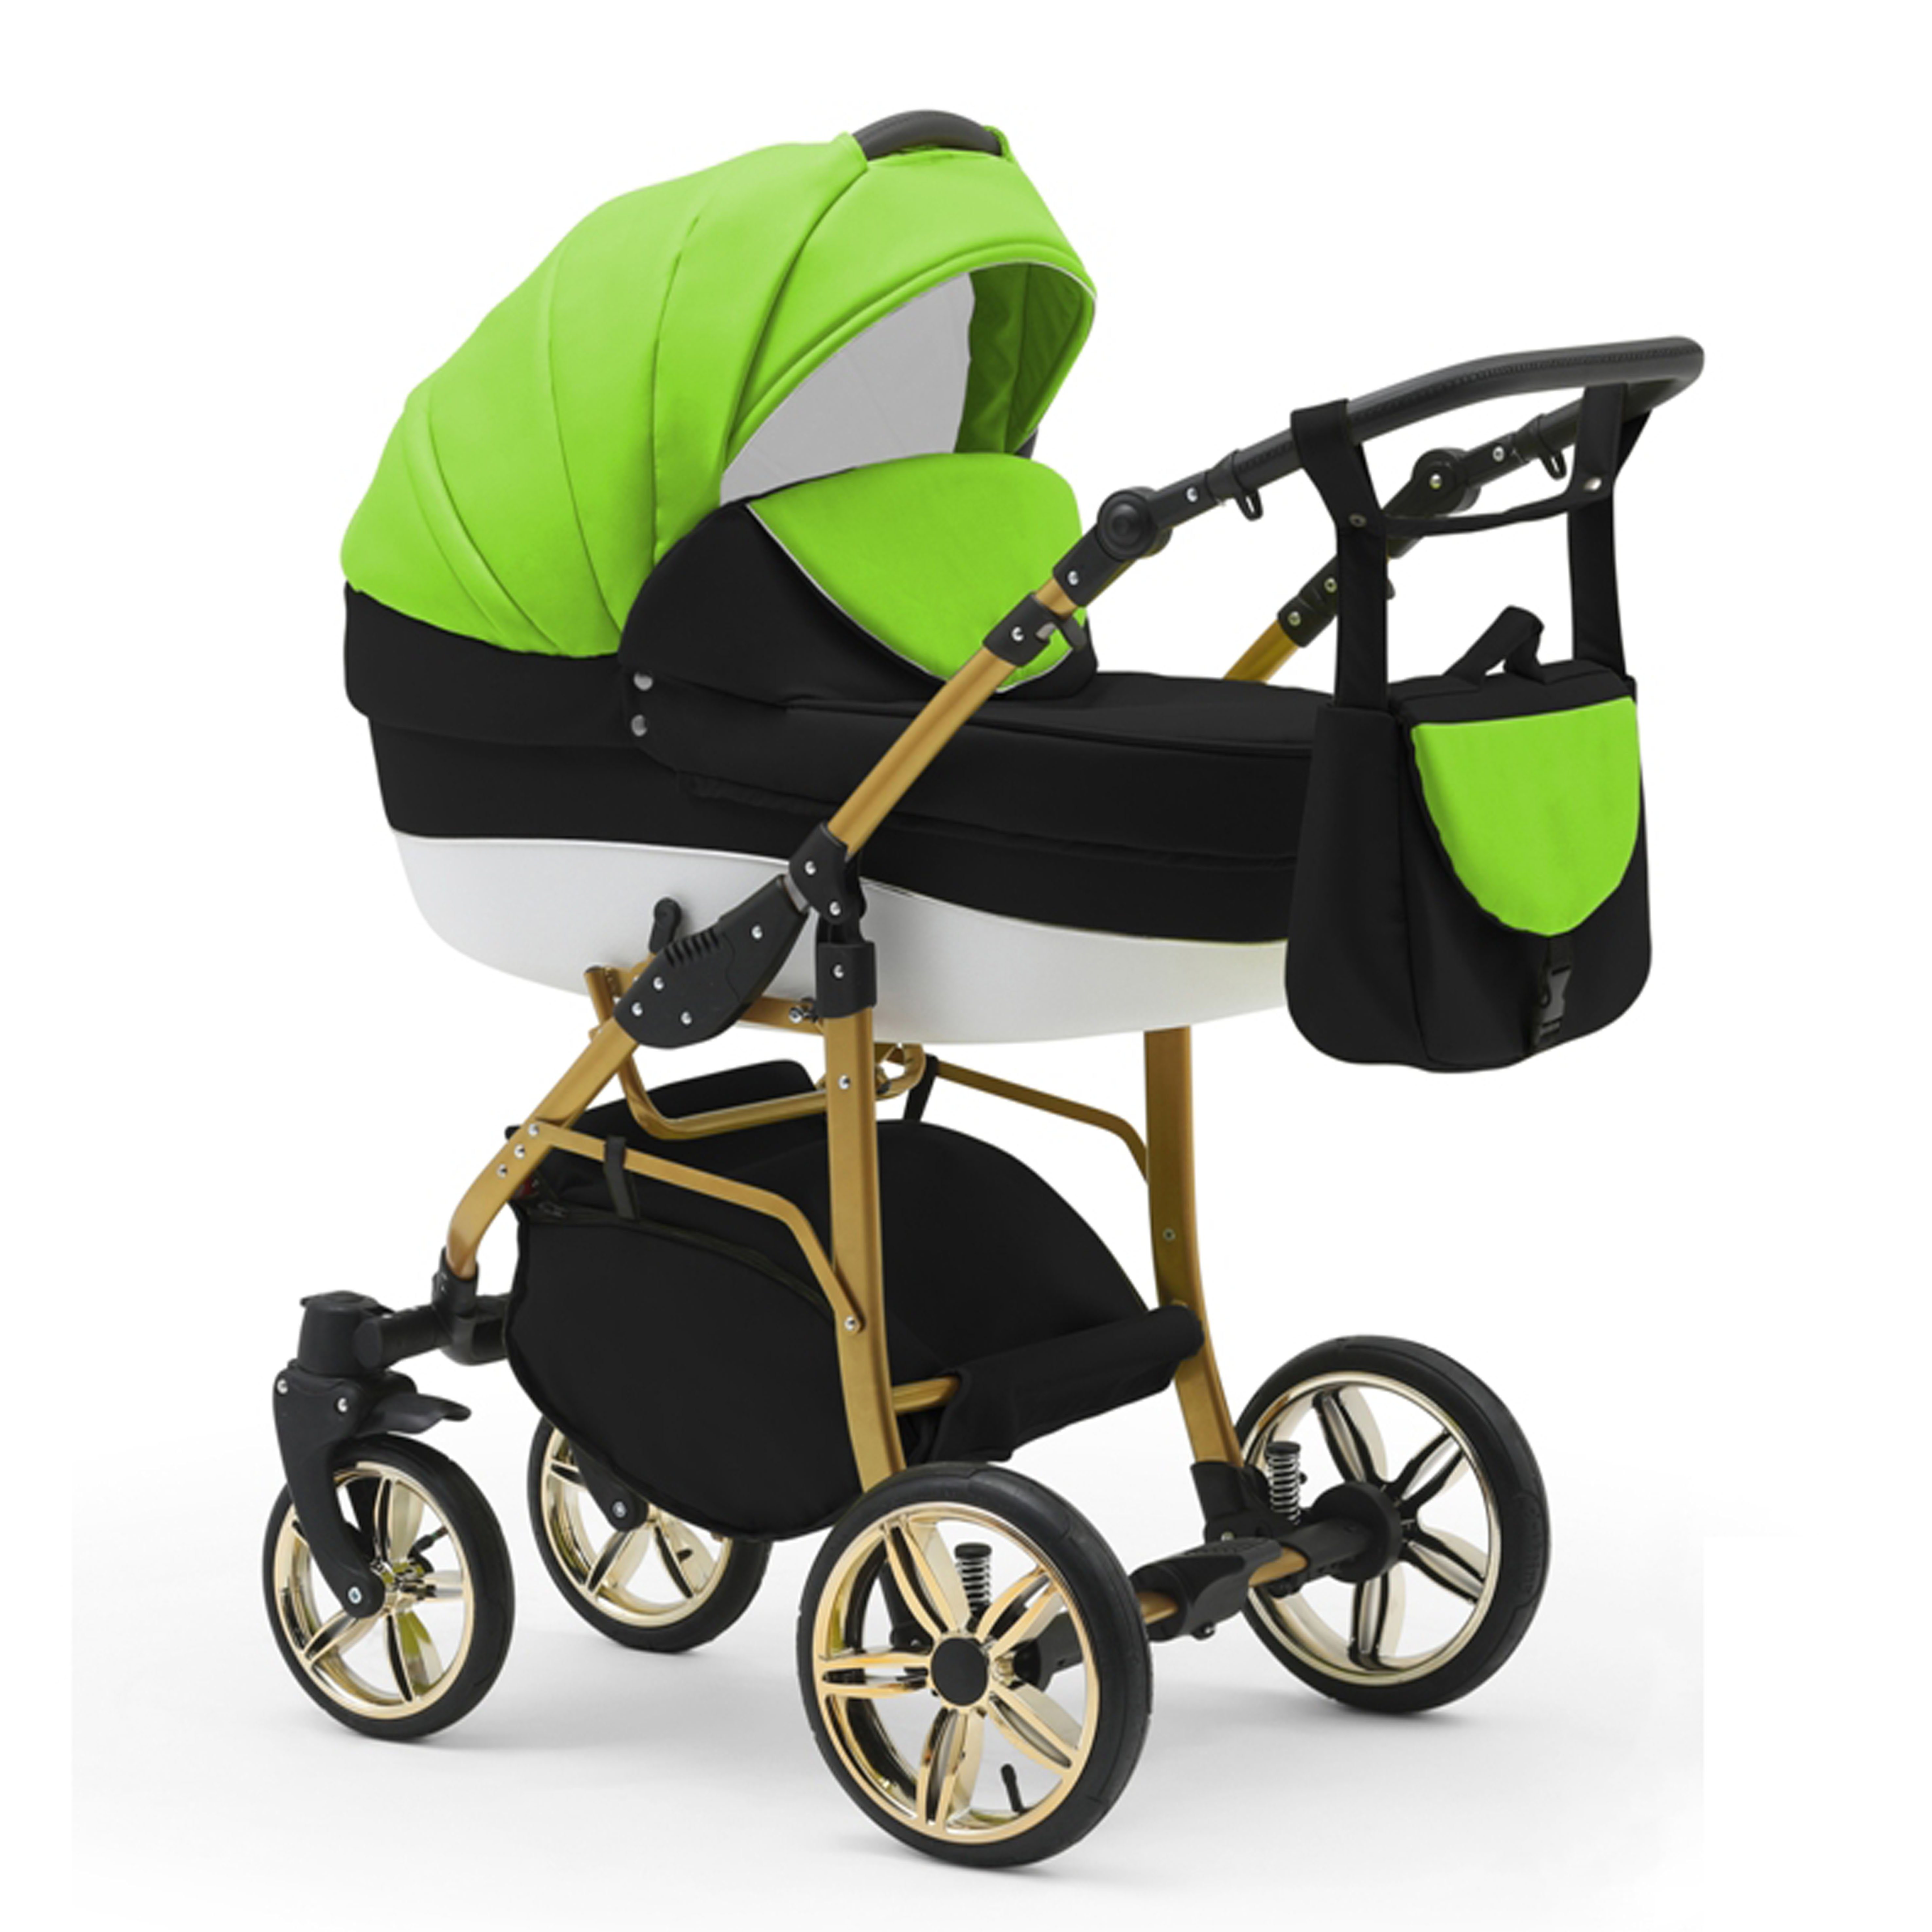 Preis ist unschlagbar babies-on-wheels Kombi-Kinderwagen 2 Teile Kinderwagen-Set in 1 - Gold Cosmo in 13 46 - Schwarz-Grün-Weiß Farben